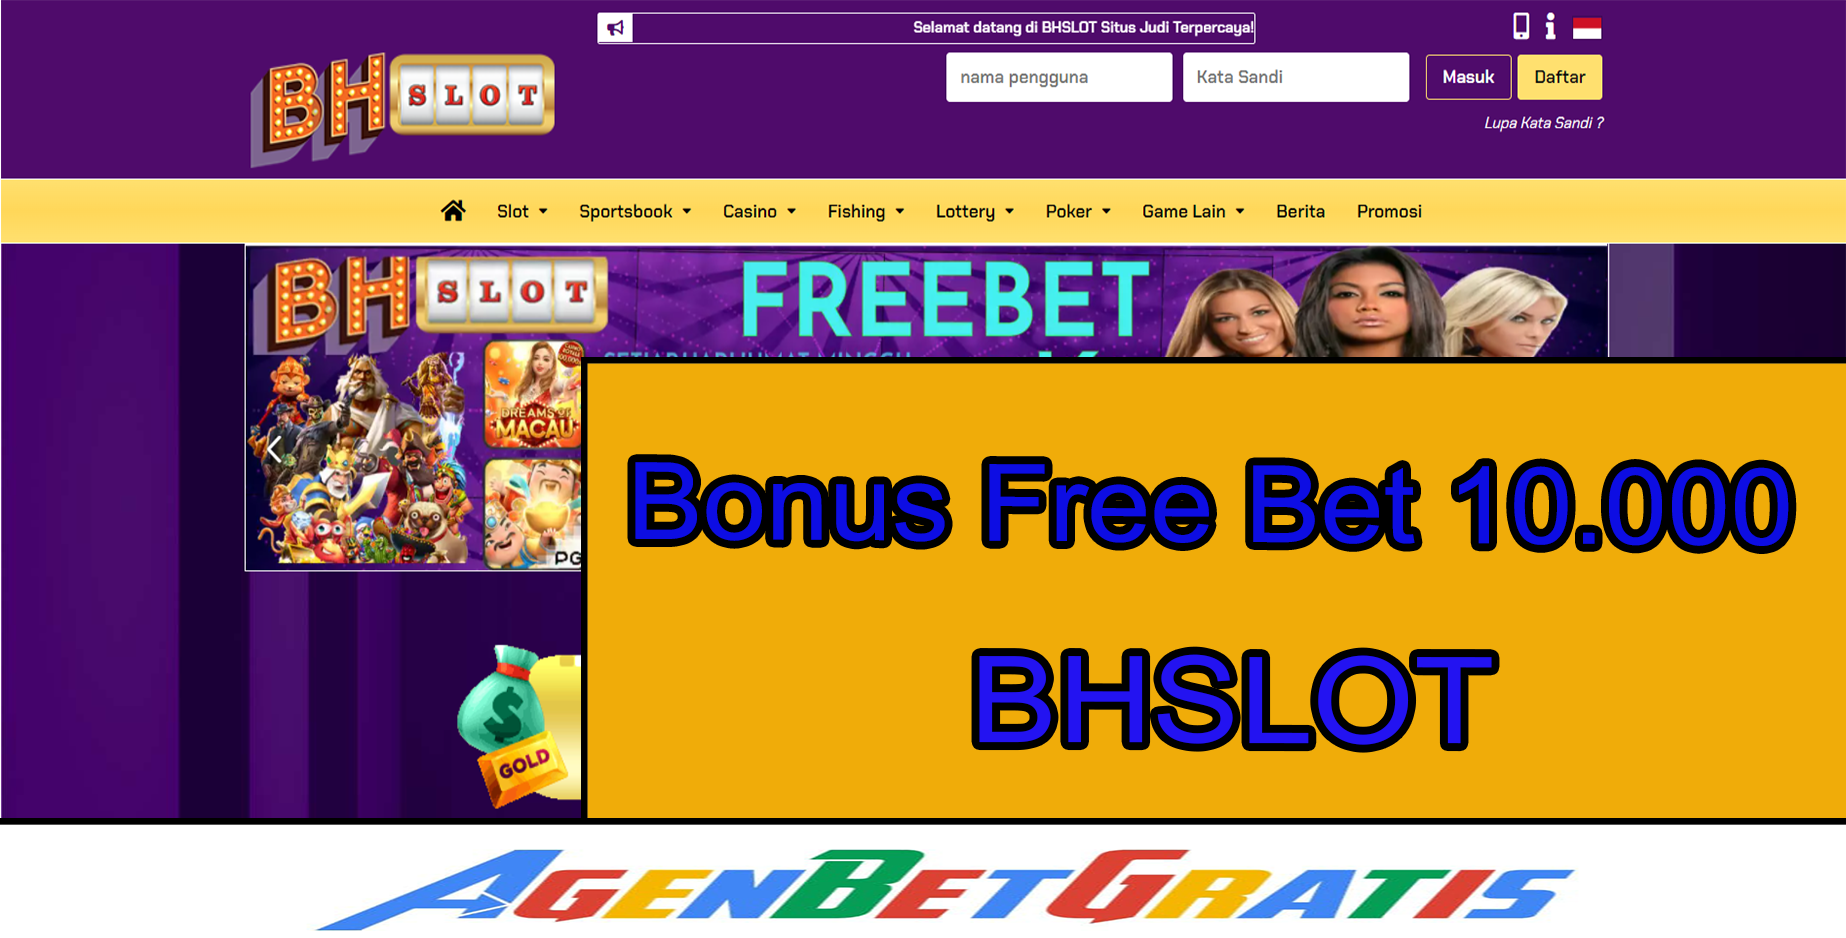 BHSLOT - Bonus Free Bet 10.000